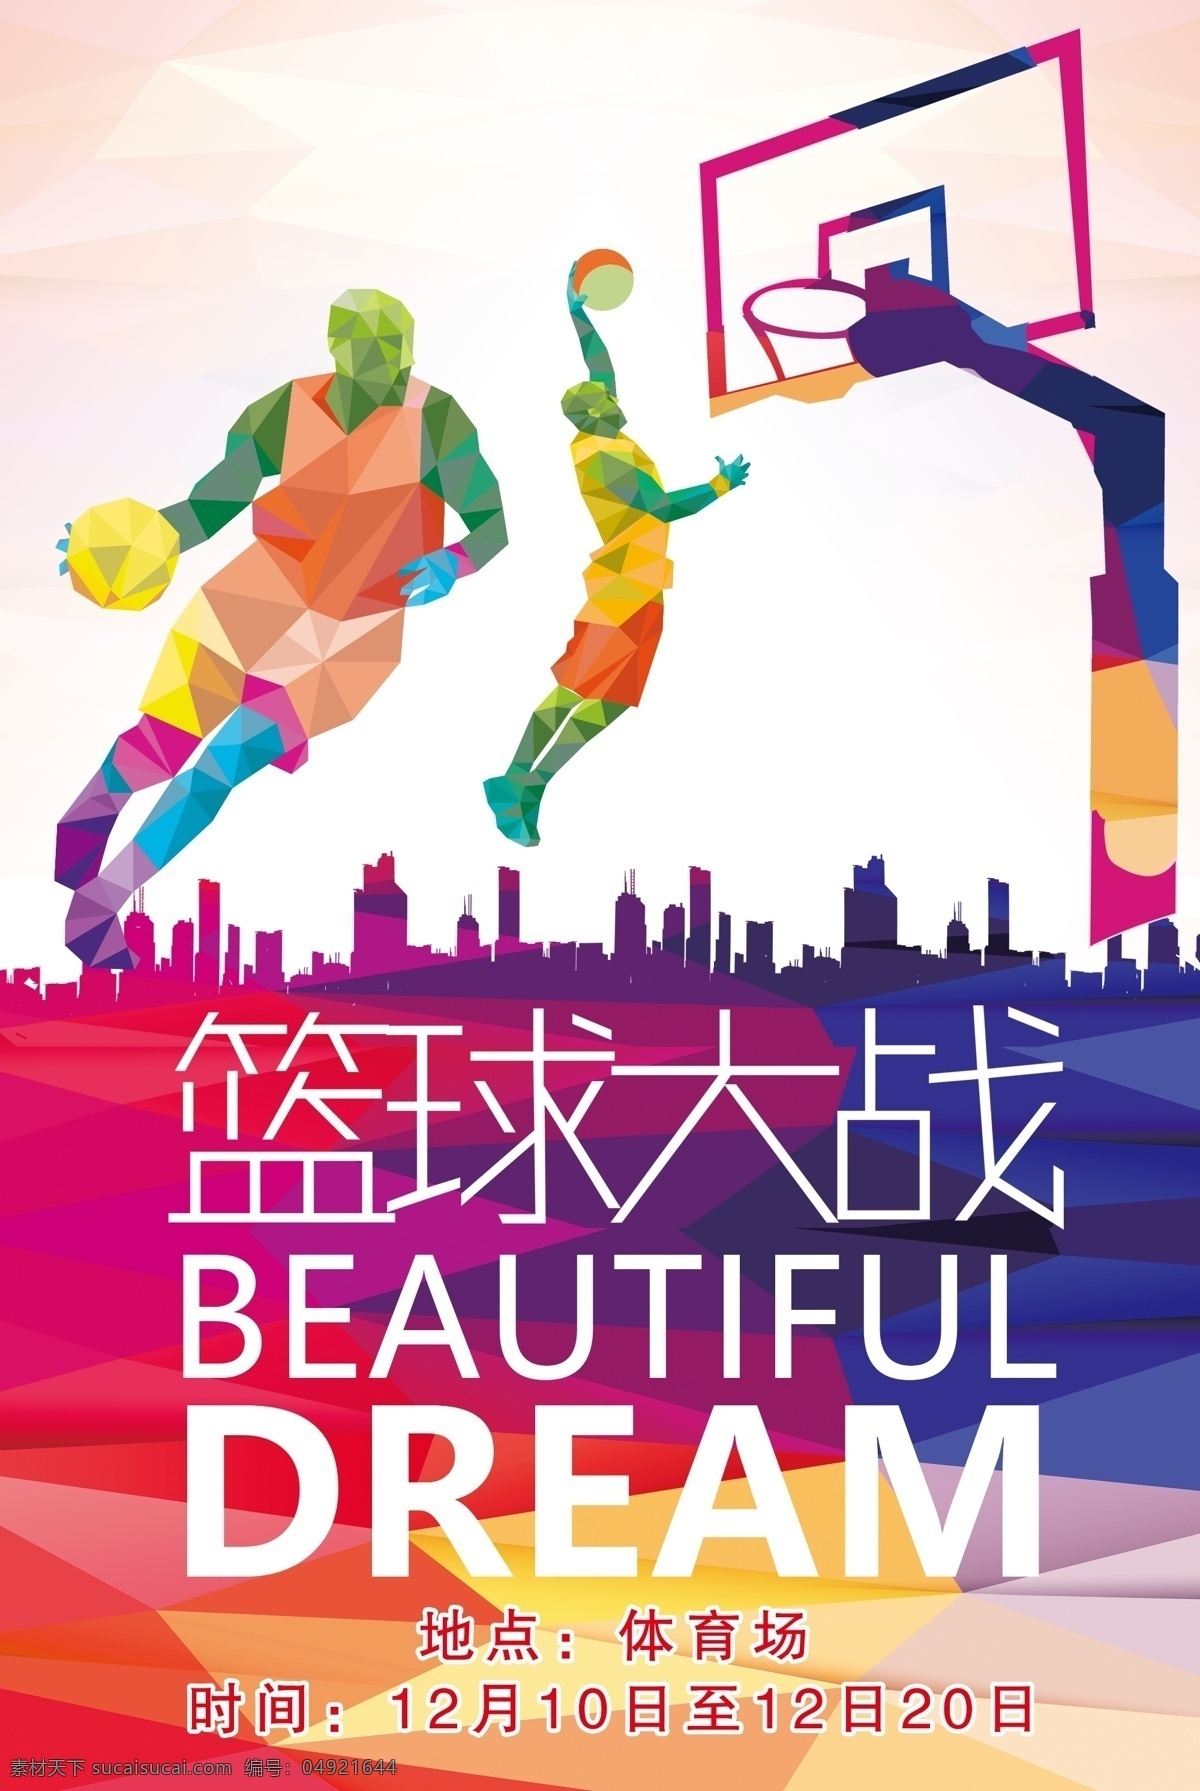 篮球足球比赛 篮球 足球 彩色 白字 比赛 海报 写真 喷绘 篮筐 两个版面